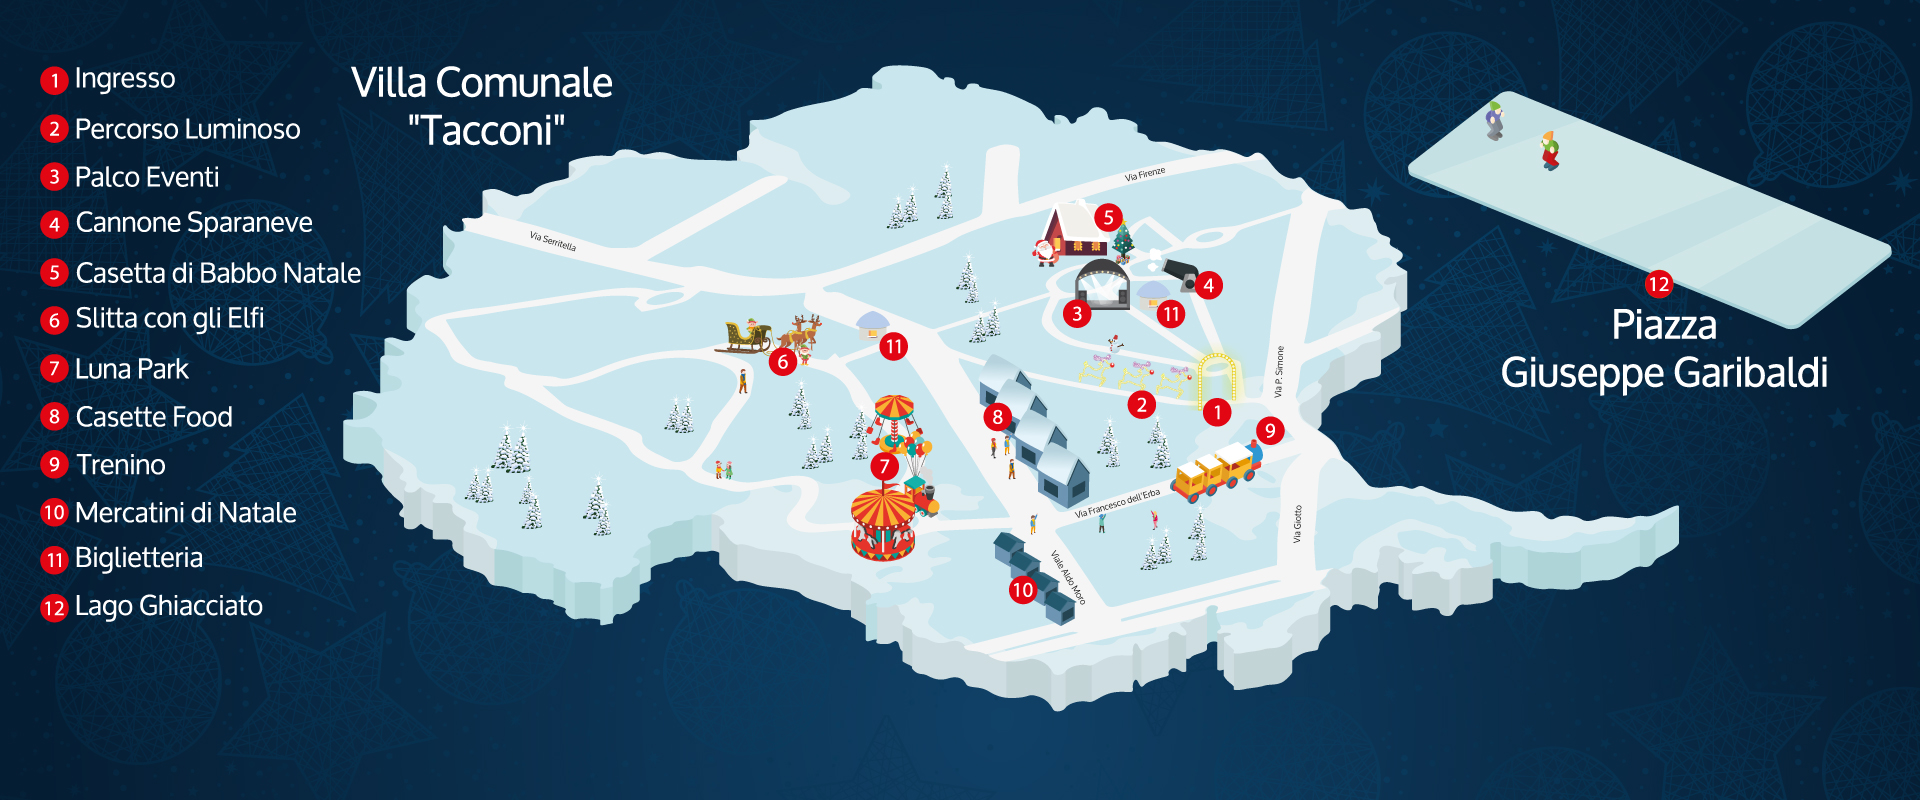 Mappa Di Babbo Natale.La Mappa 2018 Il Villaggio Di Babbo Natale